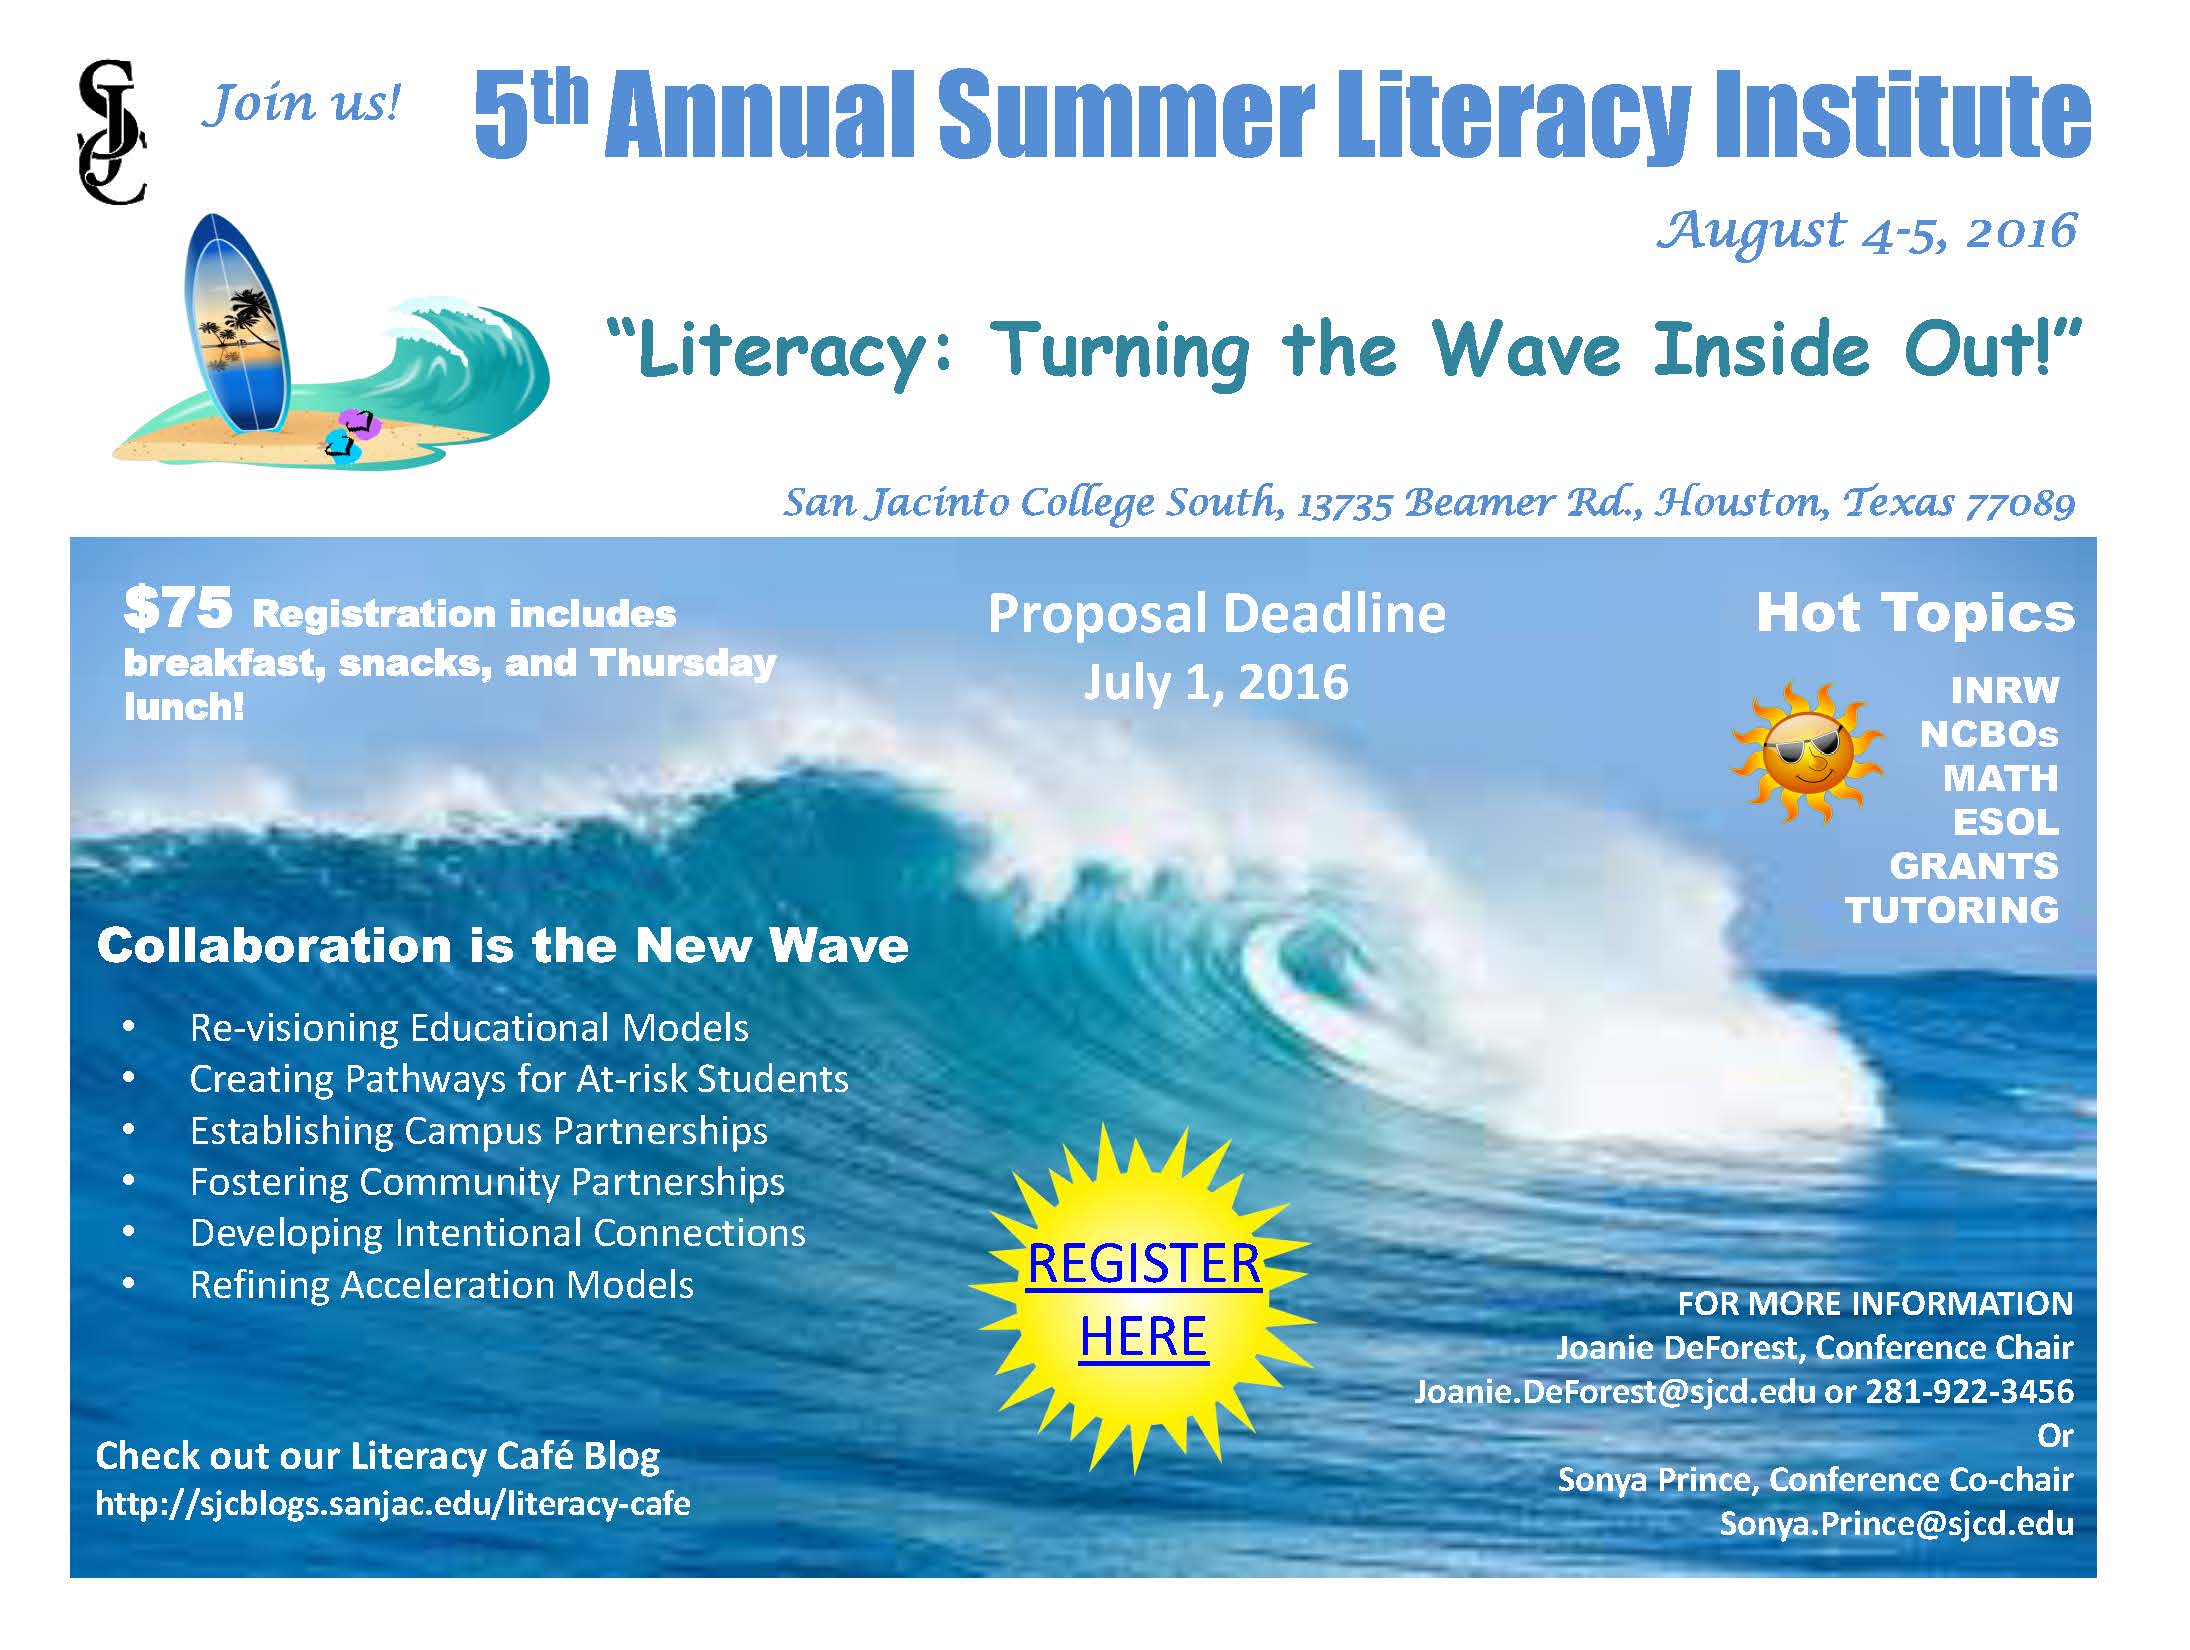 Summer Literacy Institute 2016 Flyer